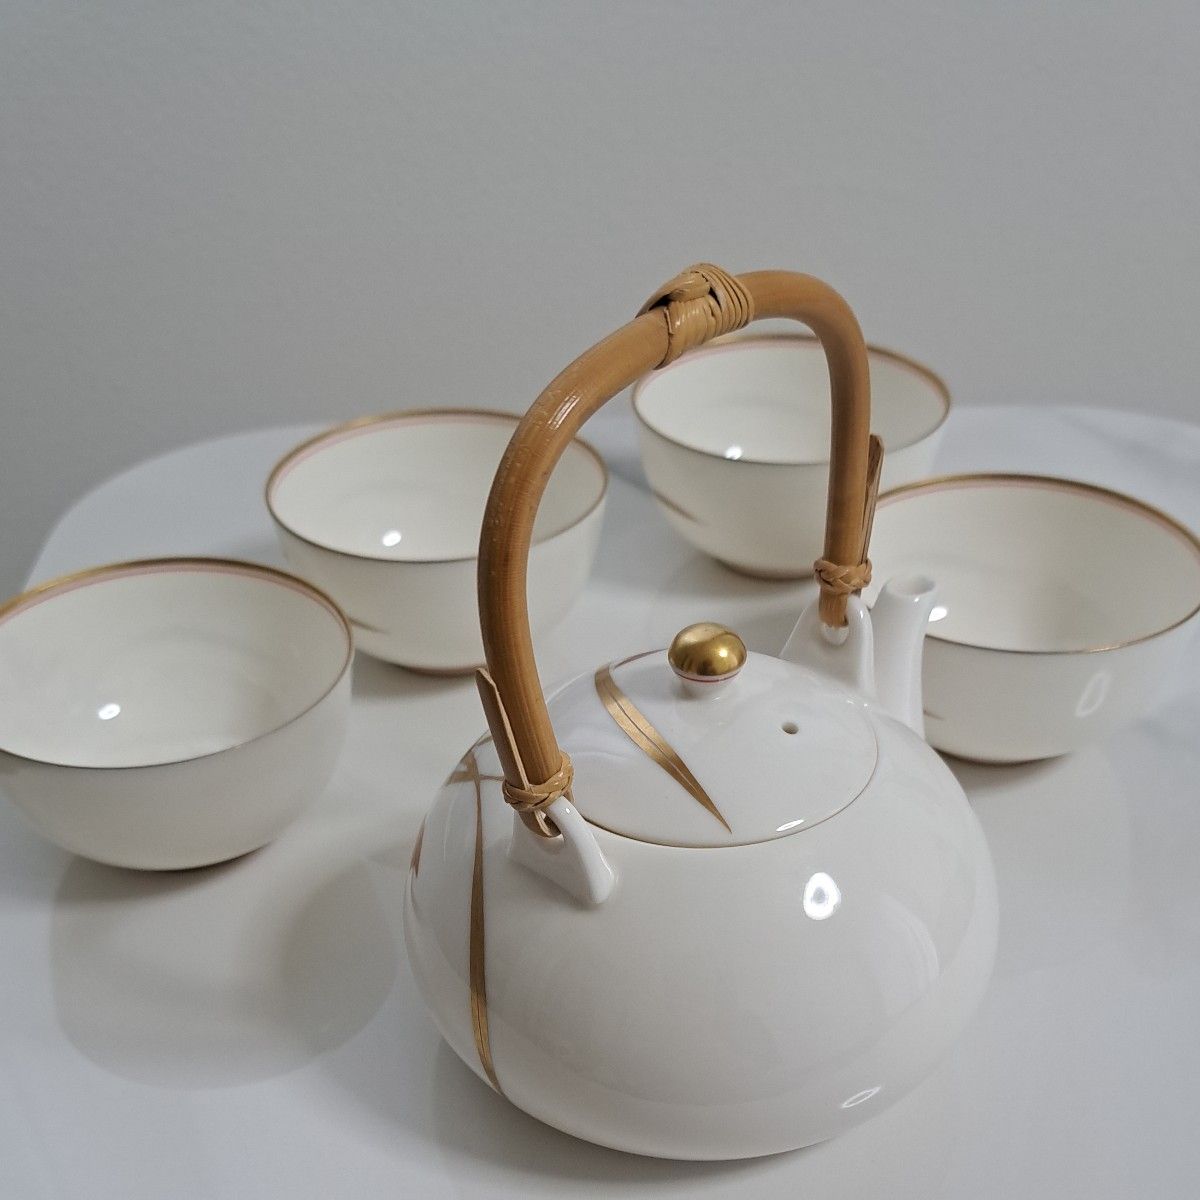 香蘭社 茶器揃 茶器 煎茶道具 和食器 茶器セット 急須 金彩